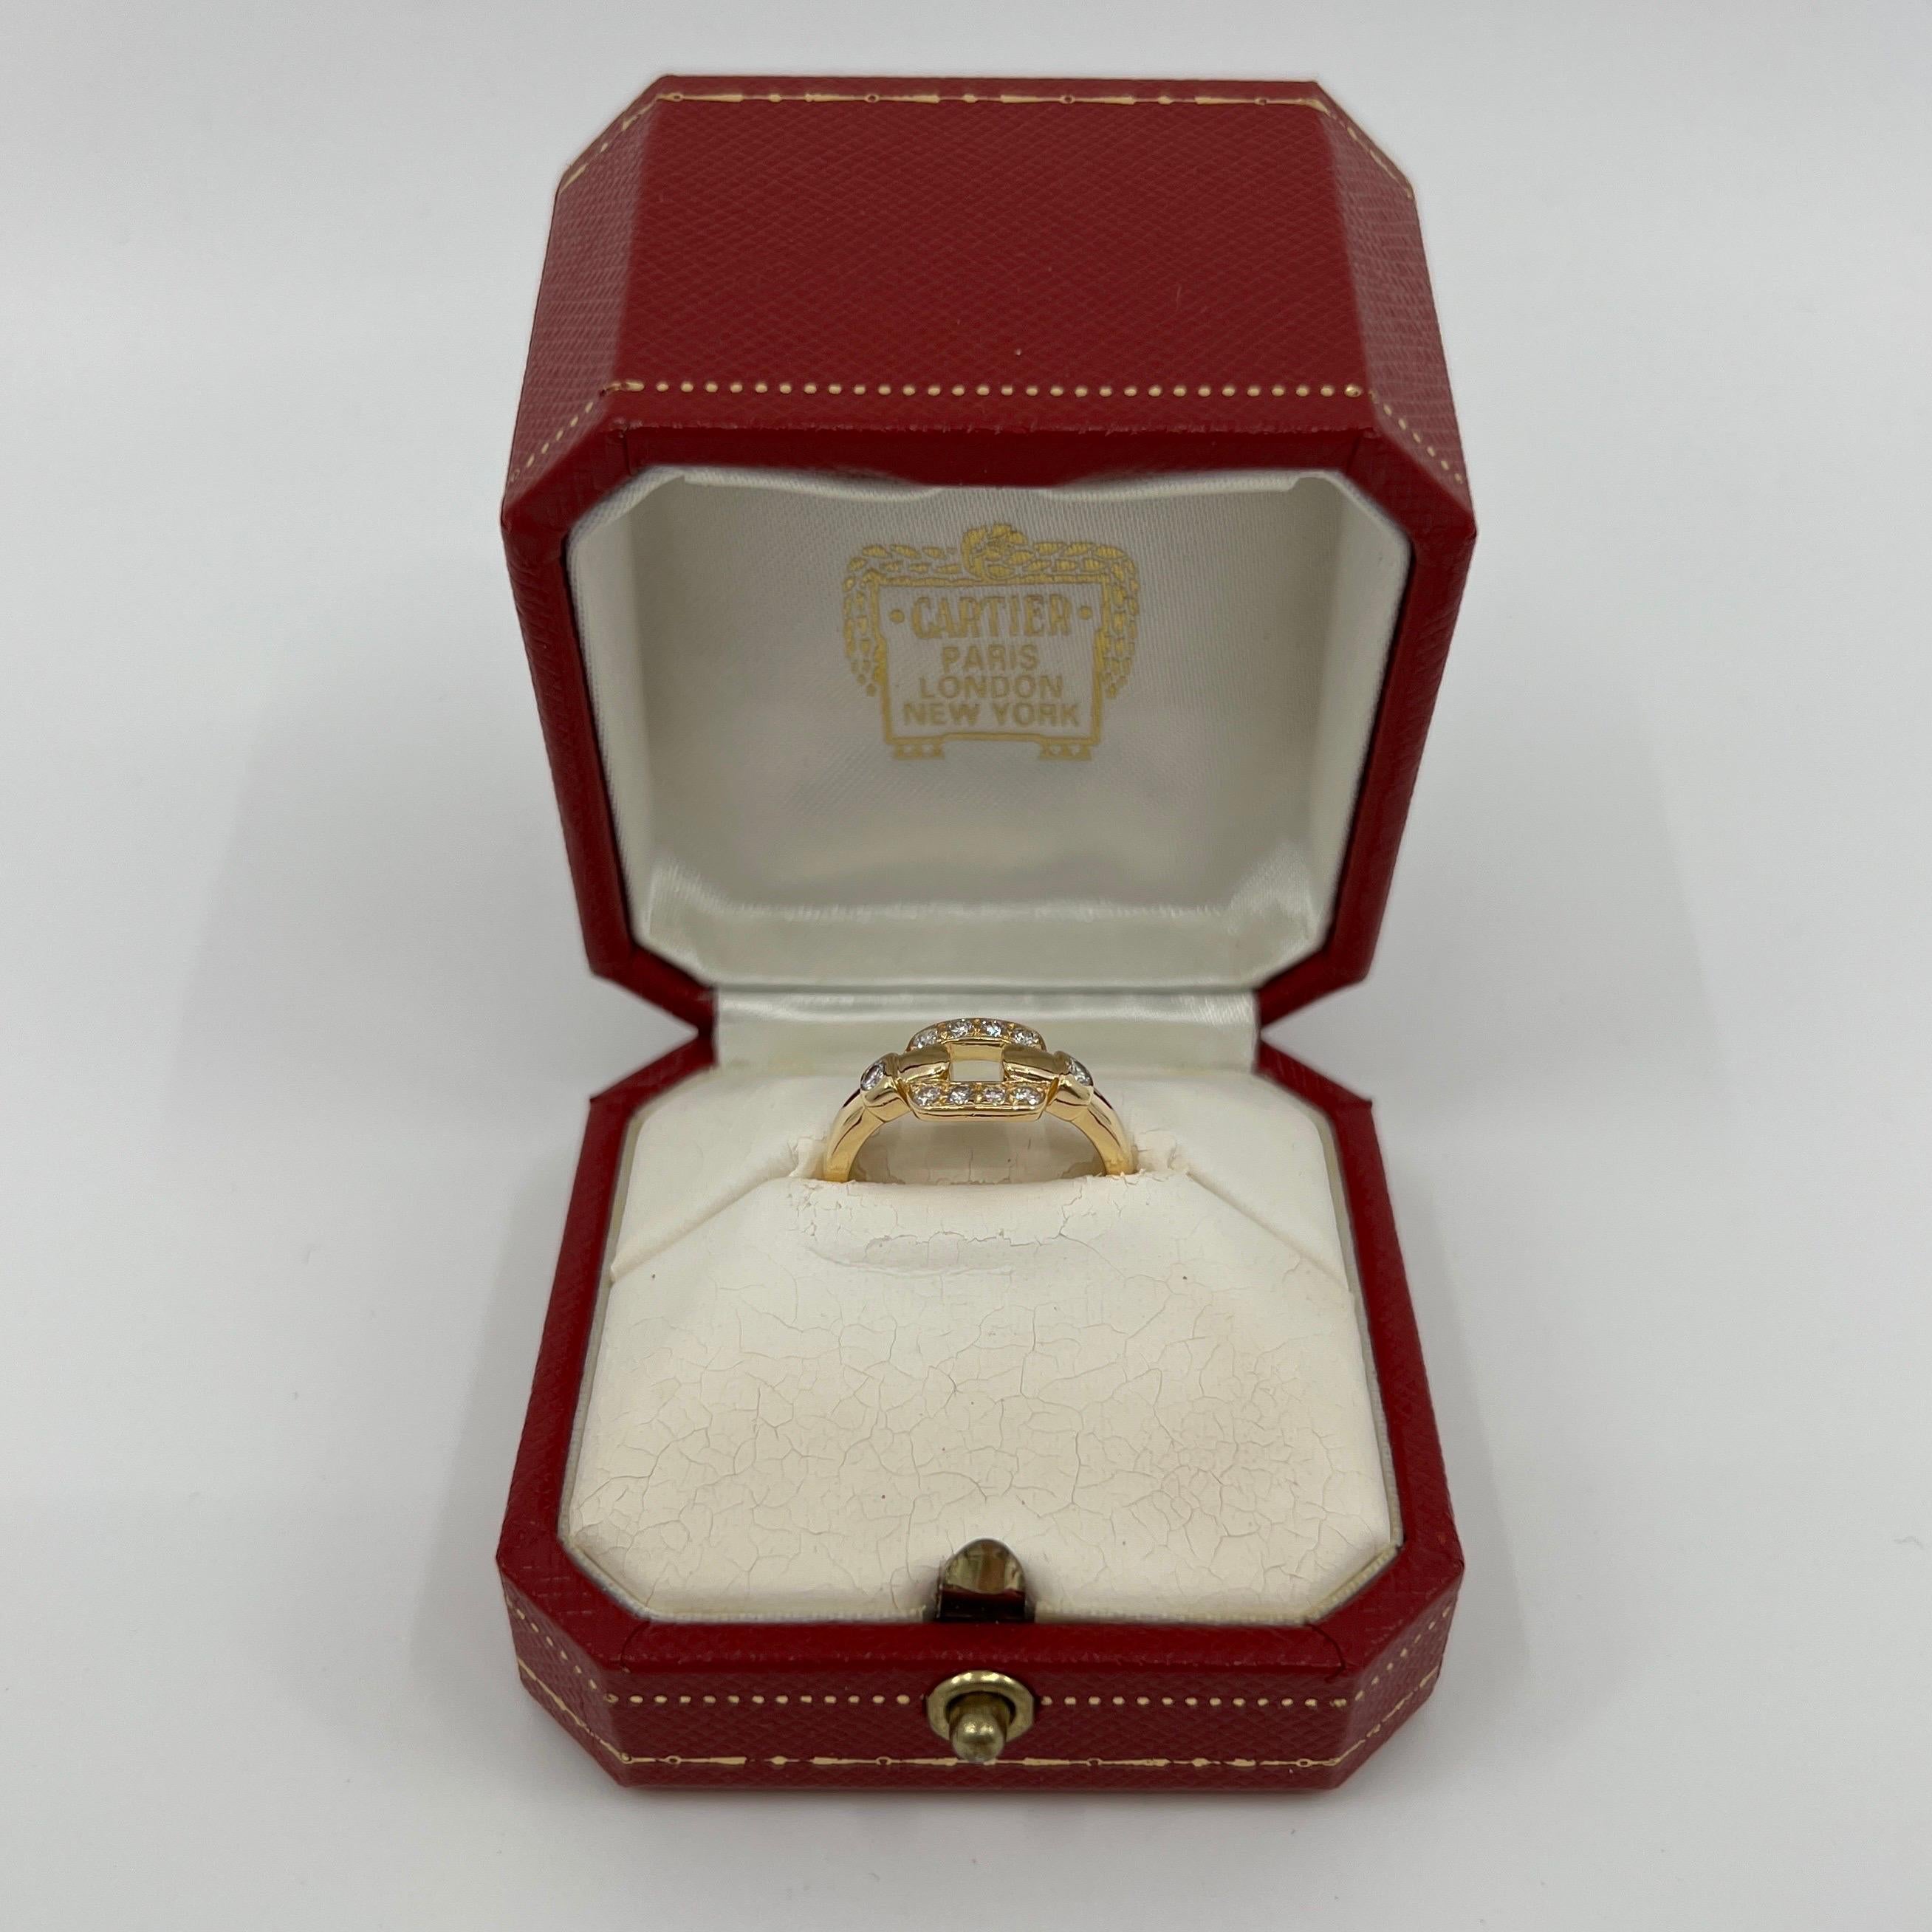 Seltene Vintage Cartier Nymphea Diamant 18k Gelbgold Cluster Ring.

Atemberaubender Ring aus Gelbgold, besetzt mit 10 atemberaubenden runden farblosen Diamanten. Farbe E, Reinheit VVS, alle mit einem ausgezeichneten runden Brillantschliff.
Edle